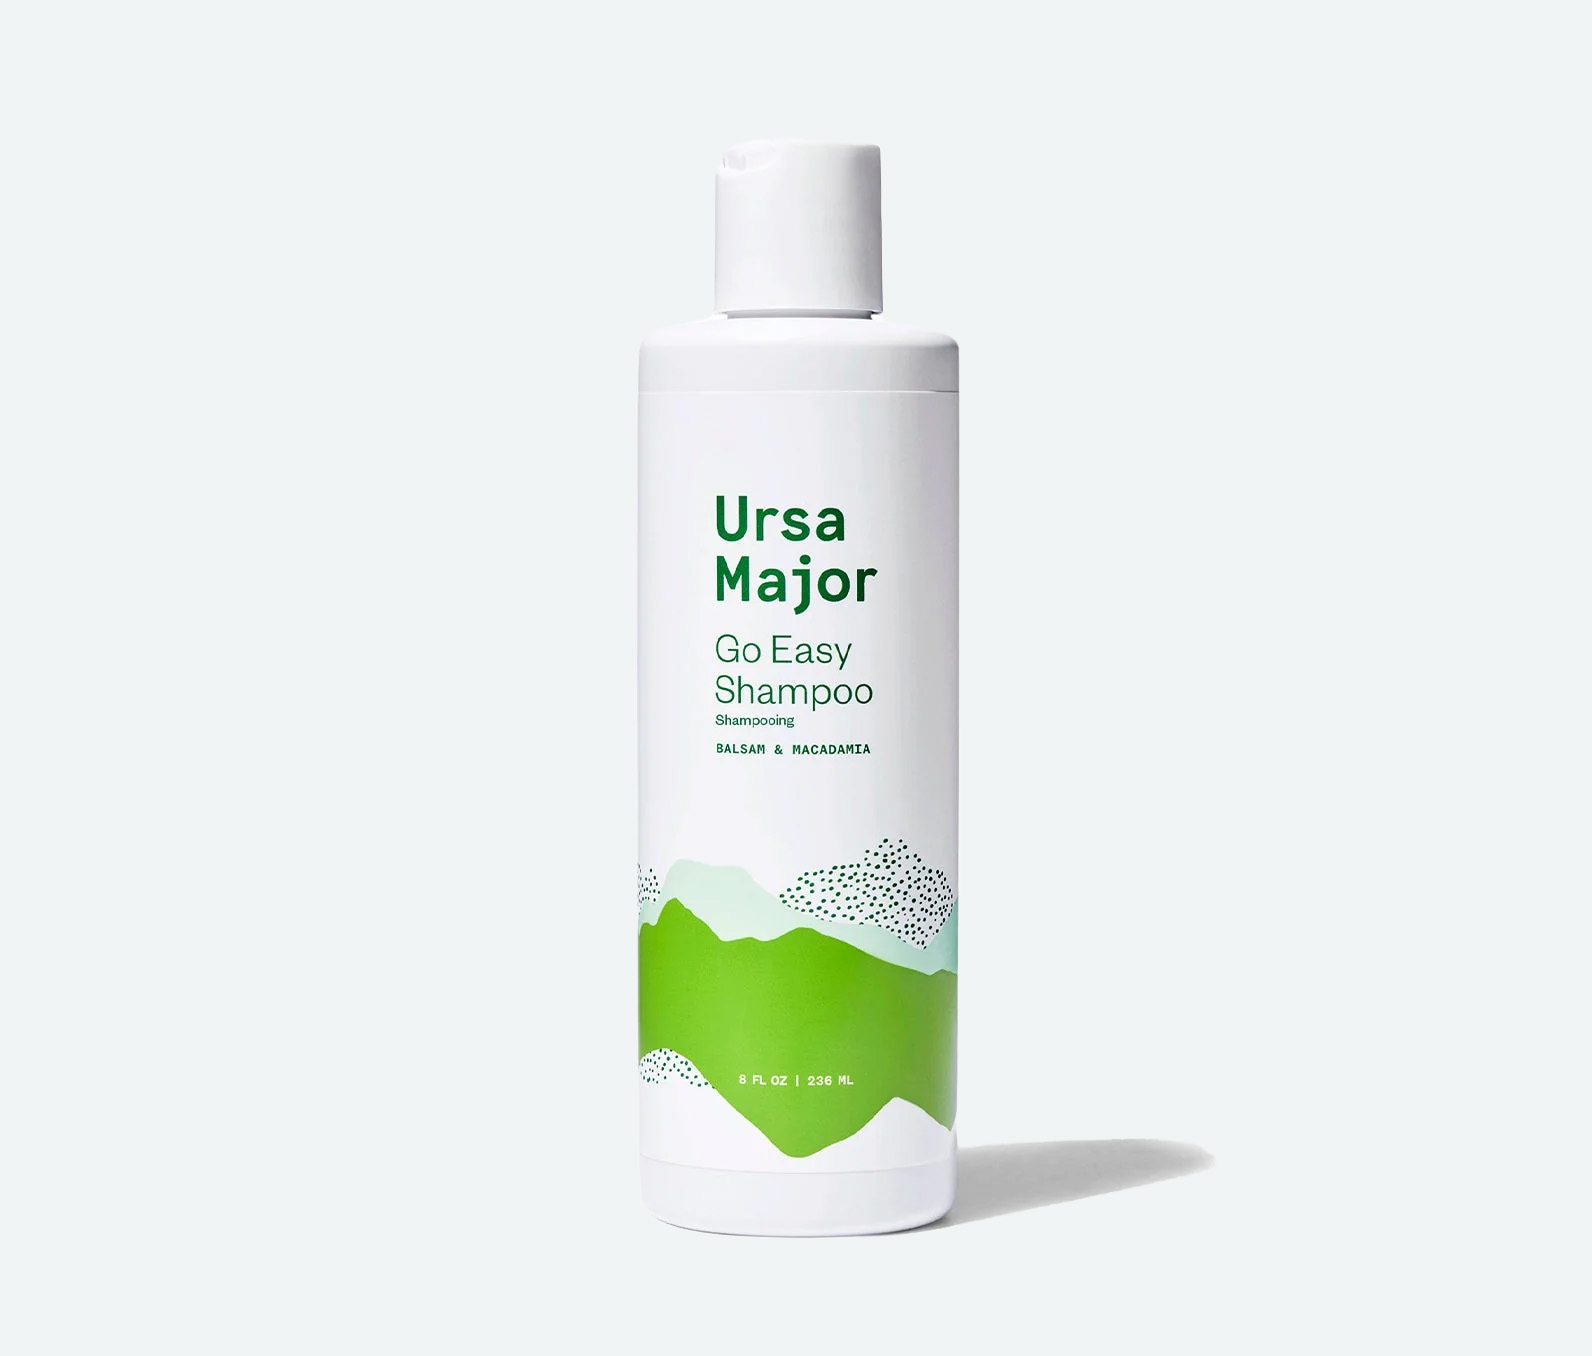 Bottle of ursa major go easy shampoo on a white background.